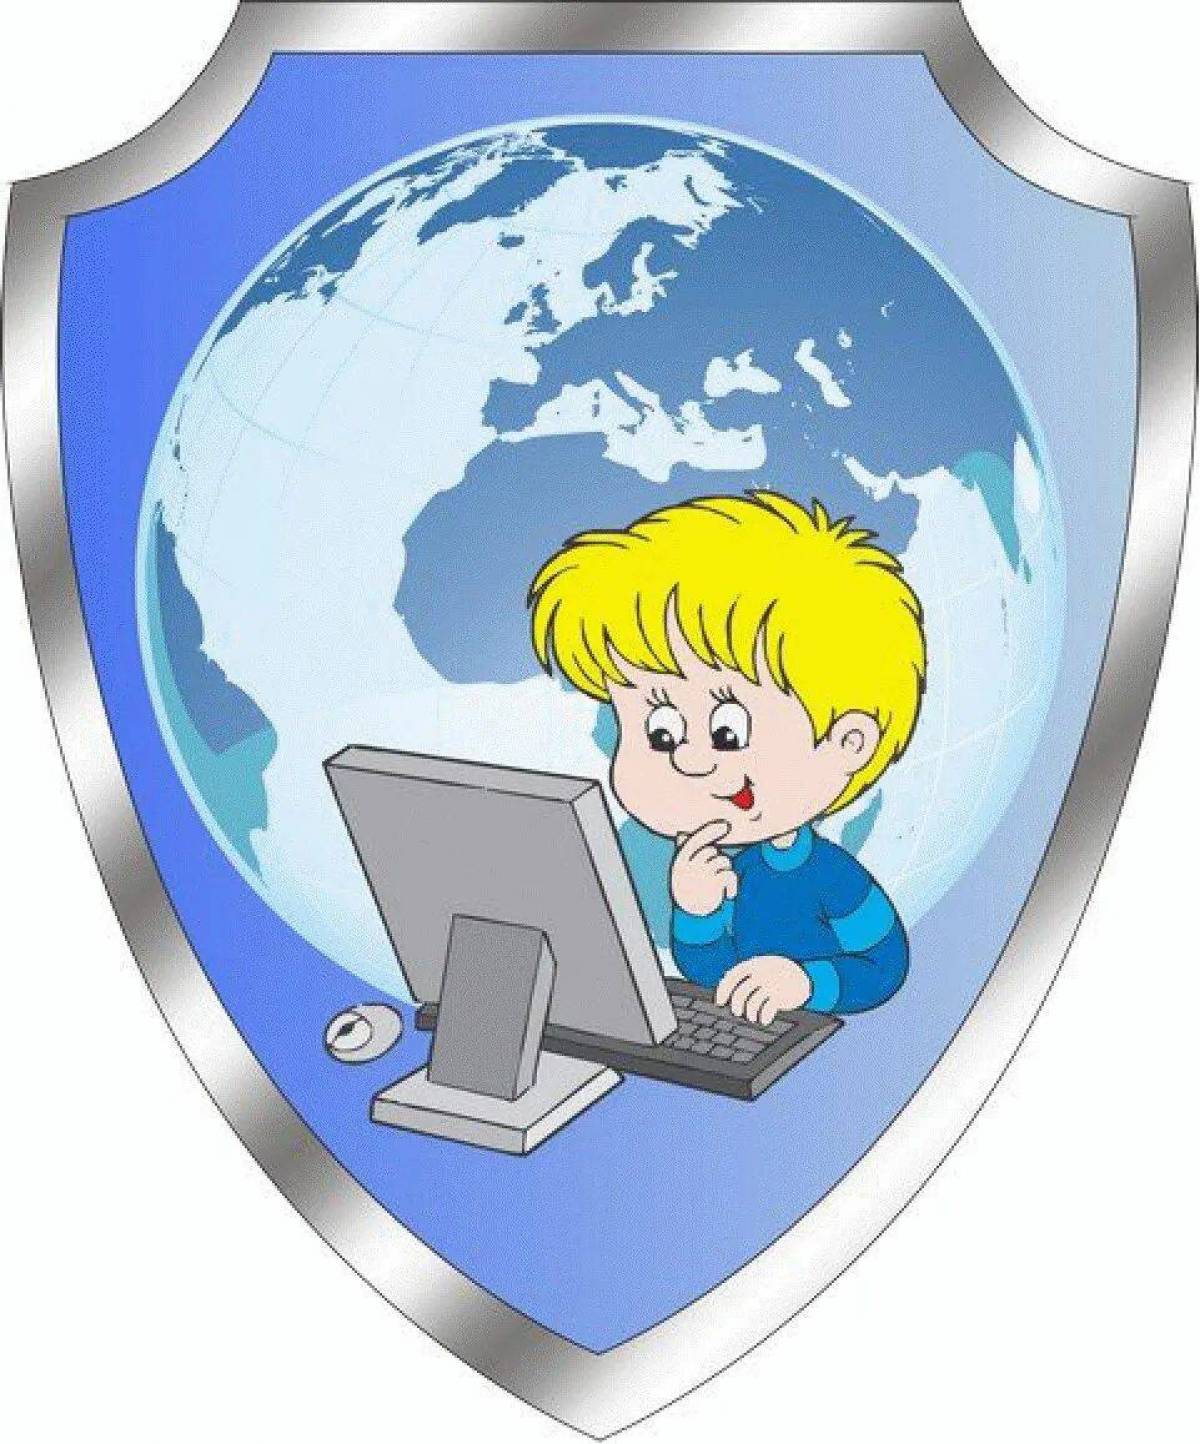 B internet. Безопасность в интернете. Безопасный интернет. Безопасность в интернете для детей. Компьютерная безопасность для детей.